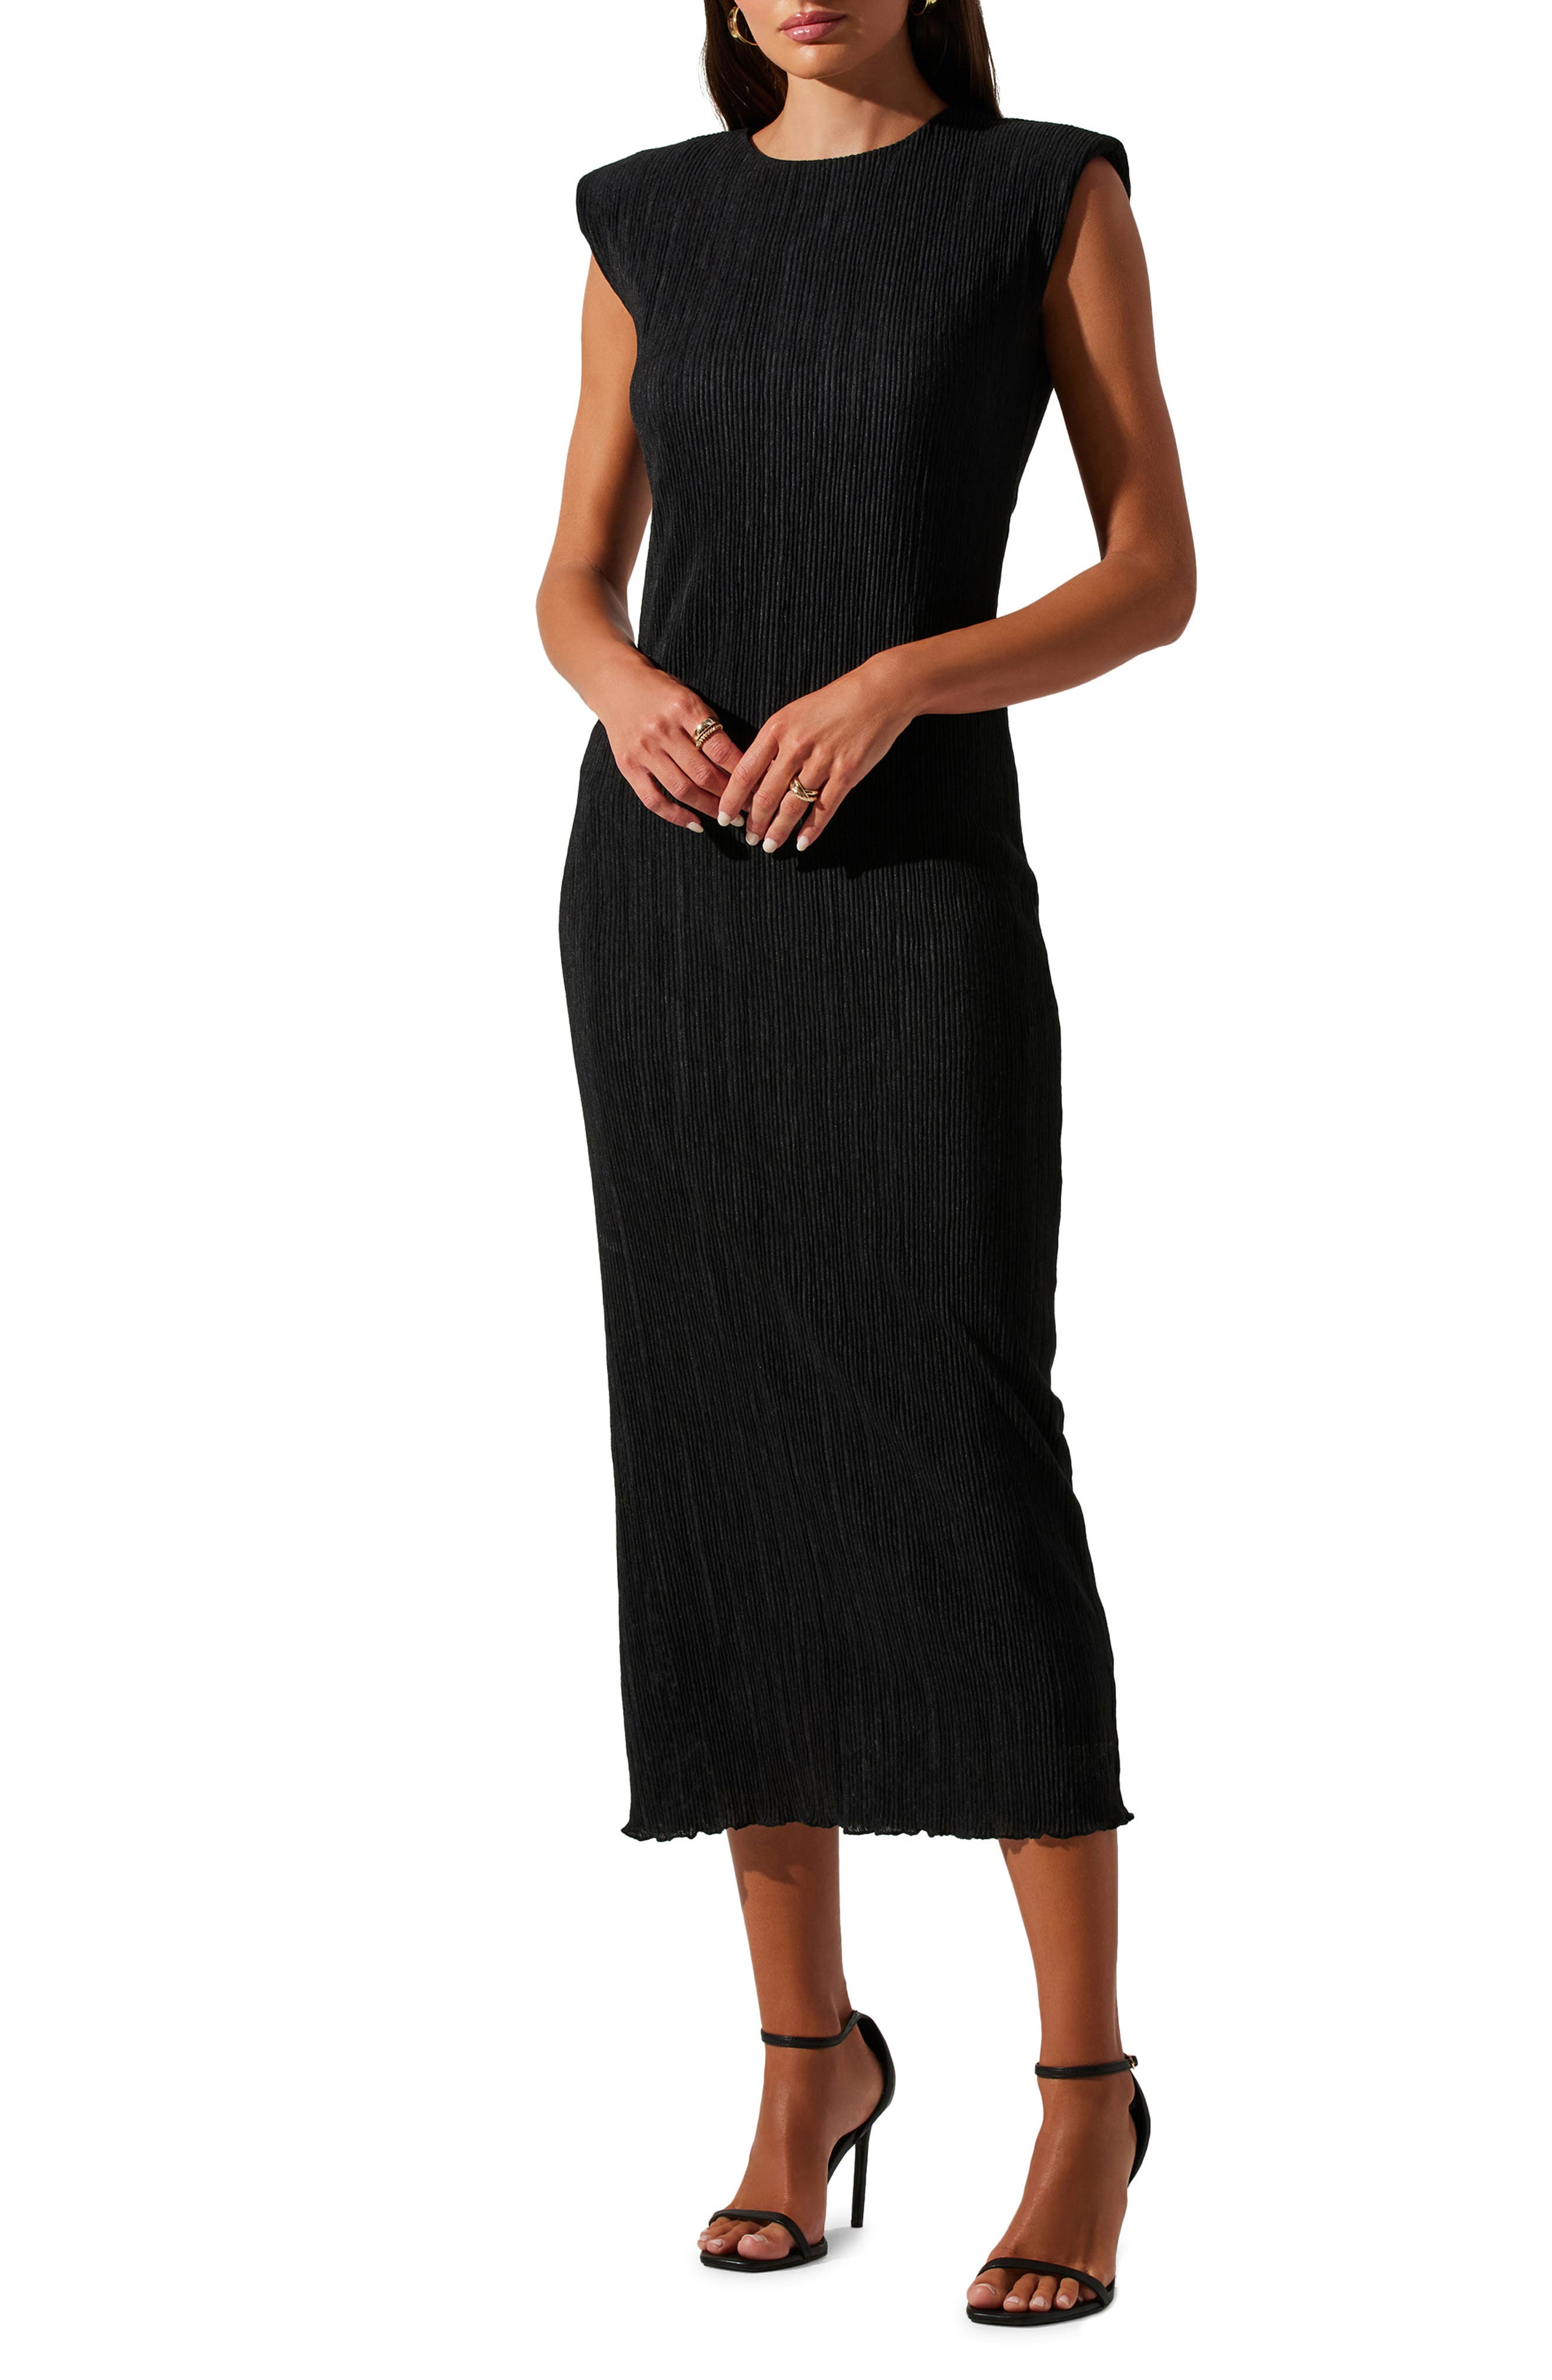 nordstrom black dress